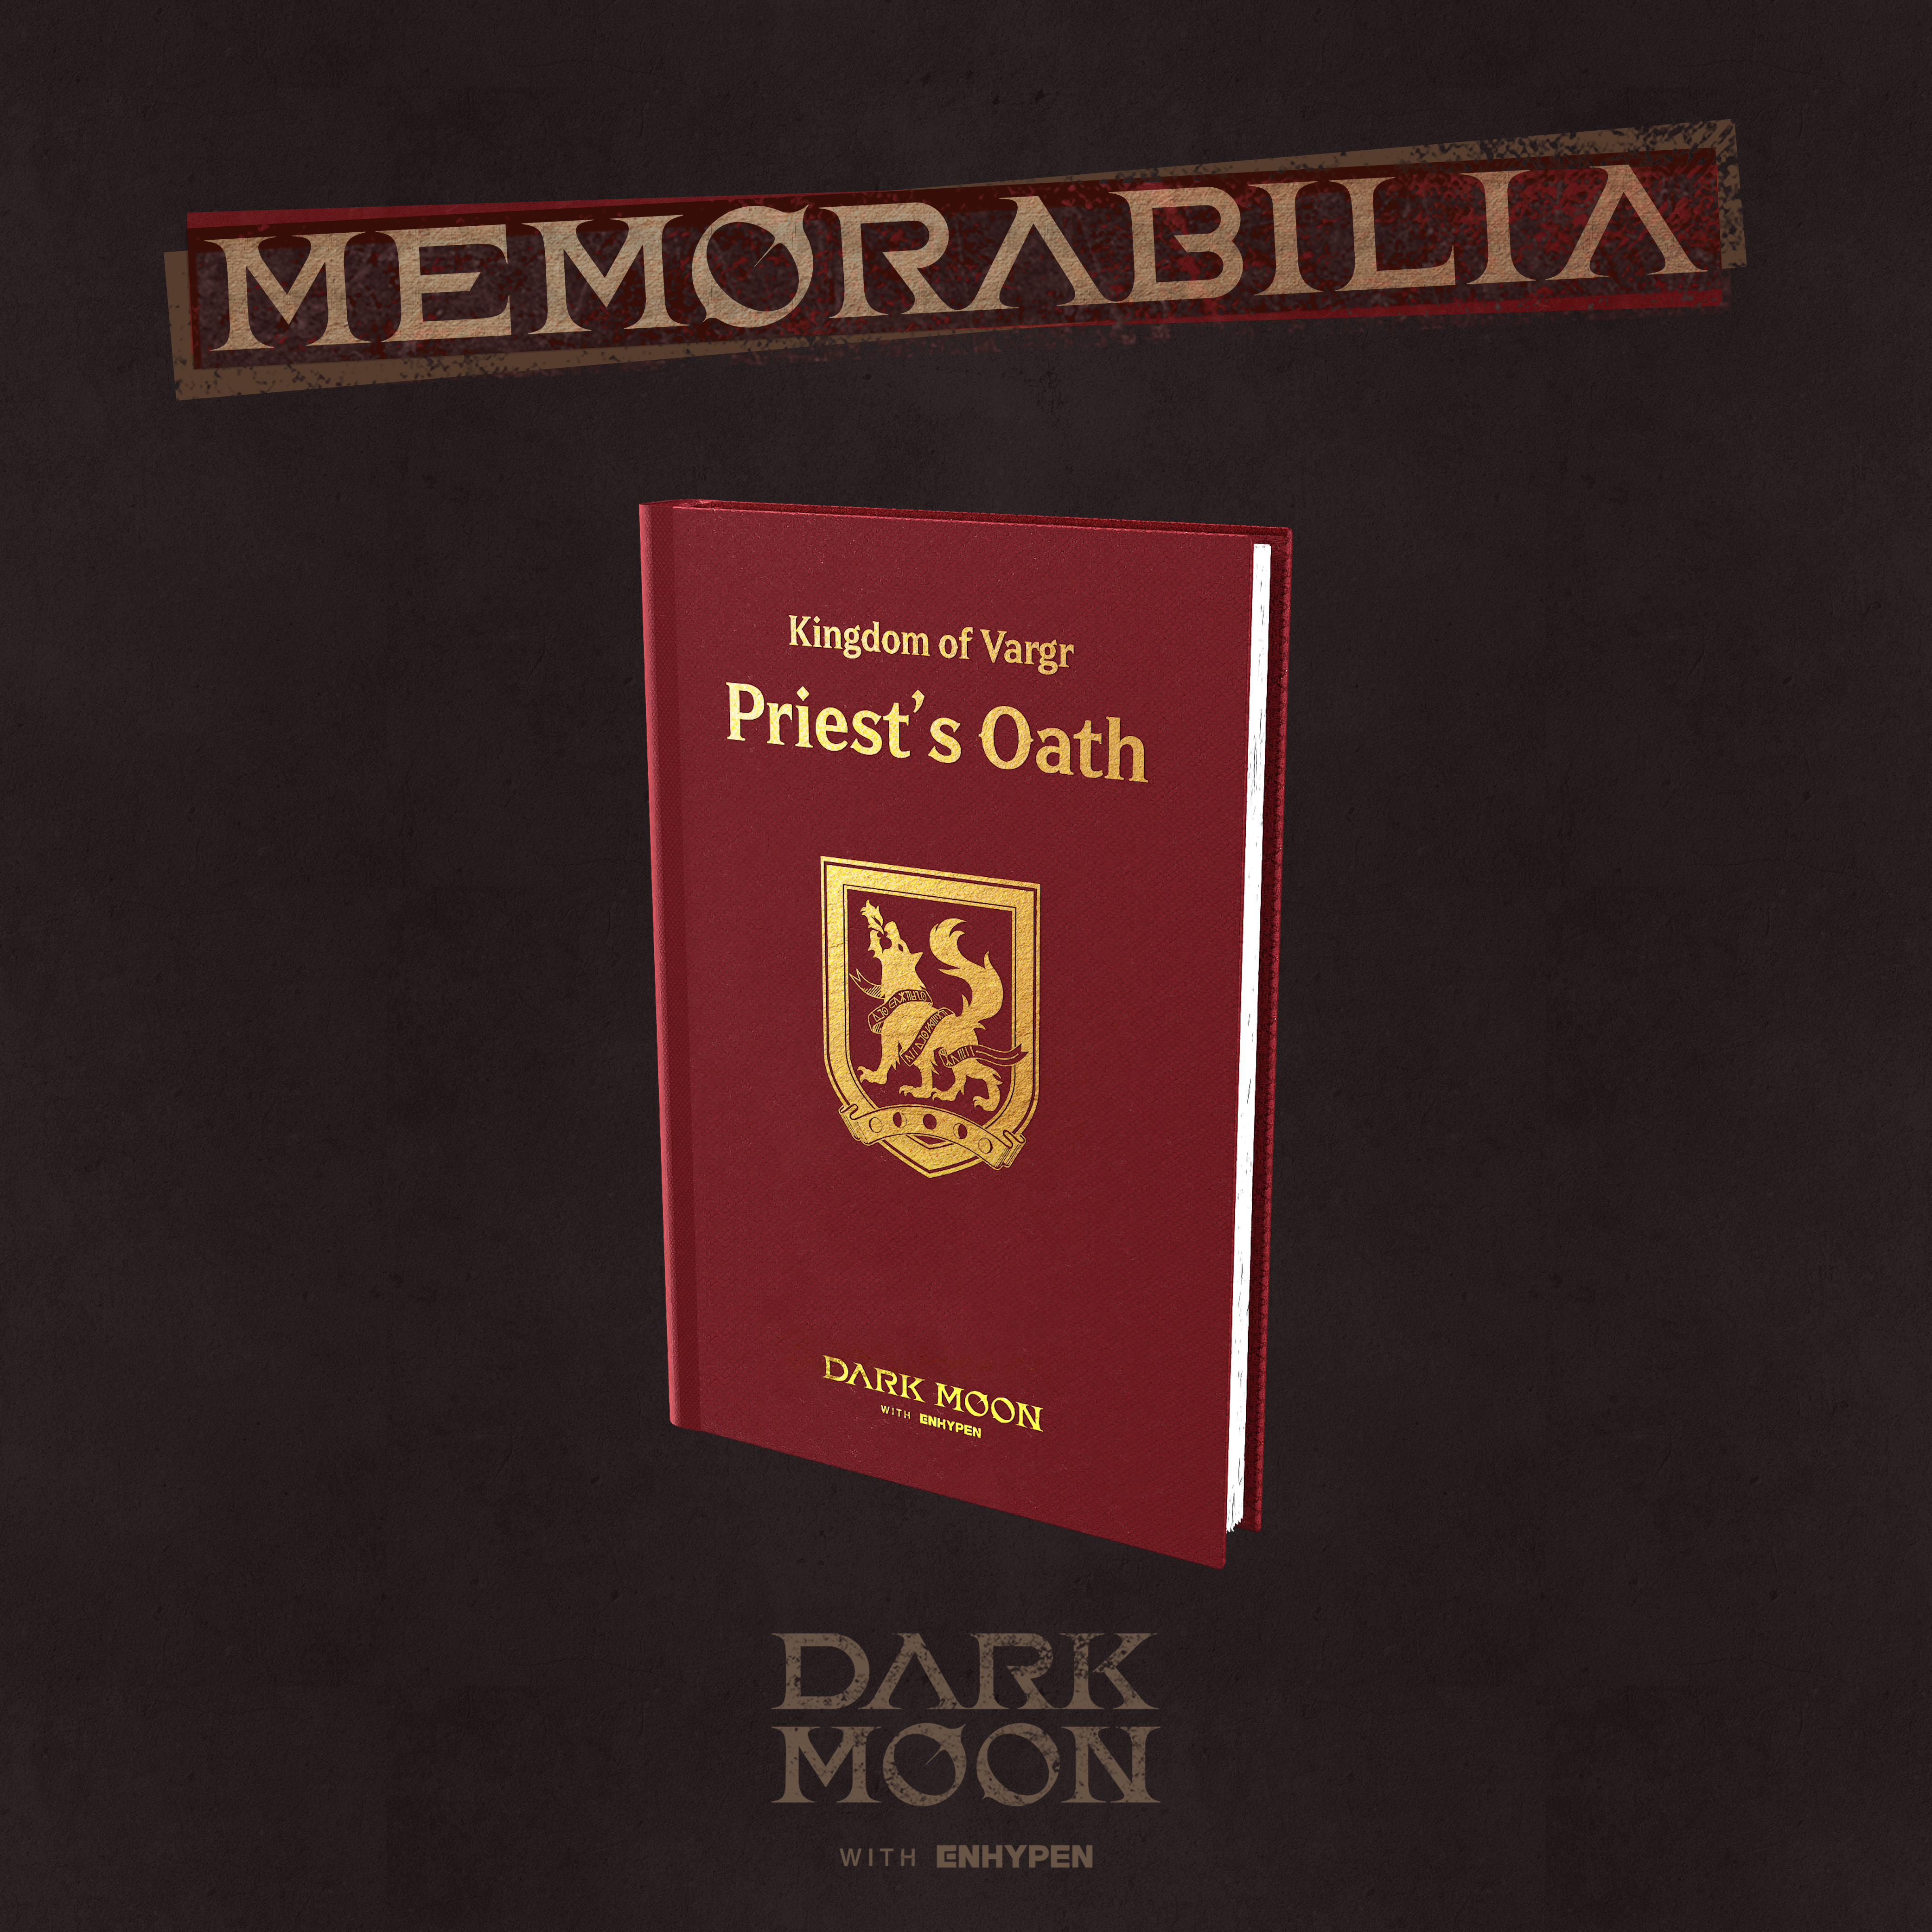 엔하이픈 ENHYPEN - DARK MOON SPECIAL ALBUM MEMORABILIA (Vargr ver.)